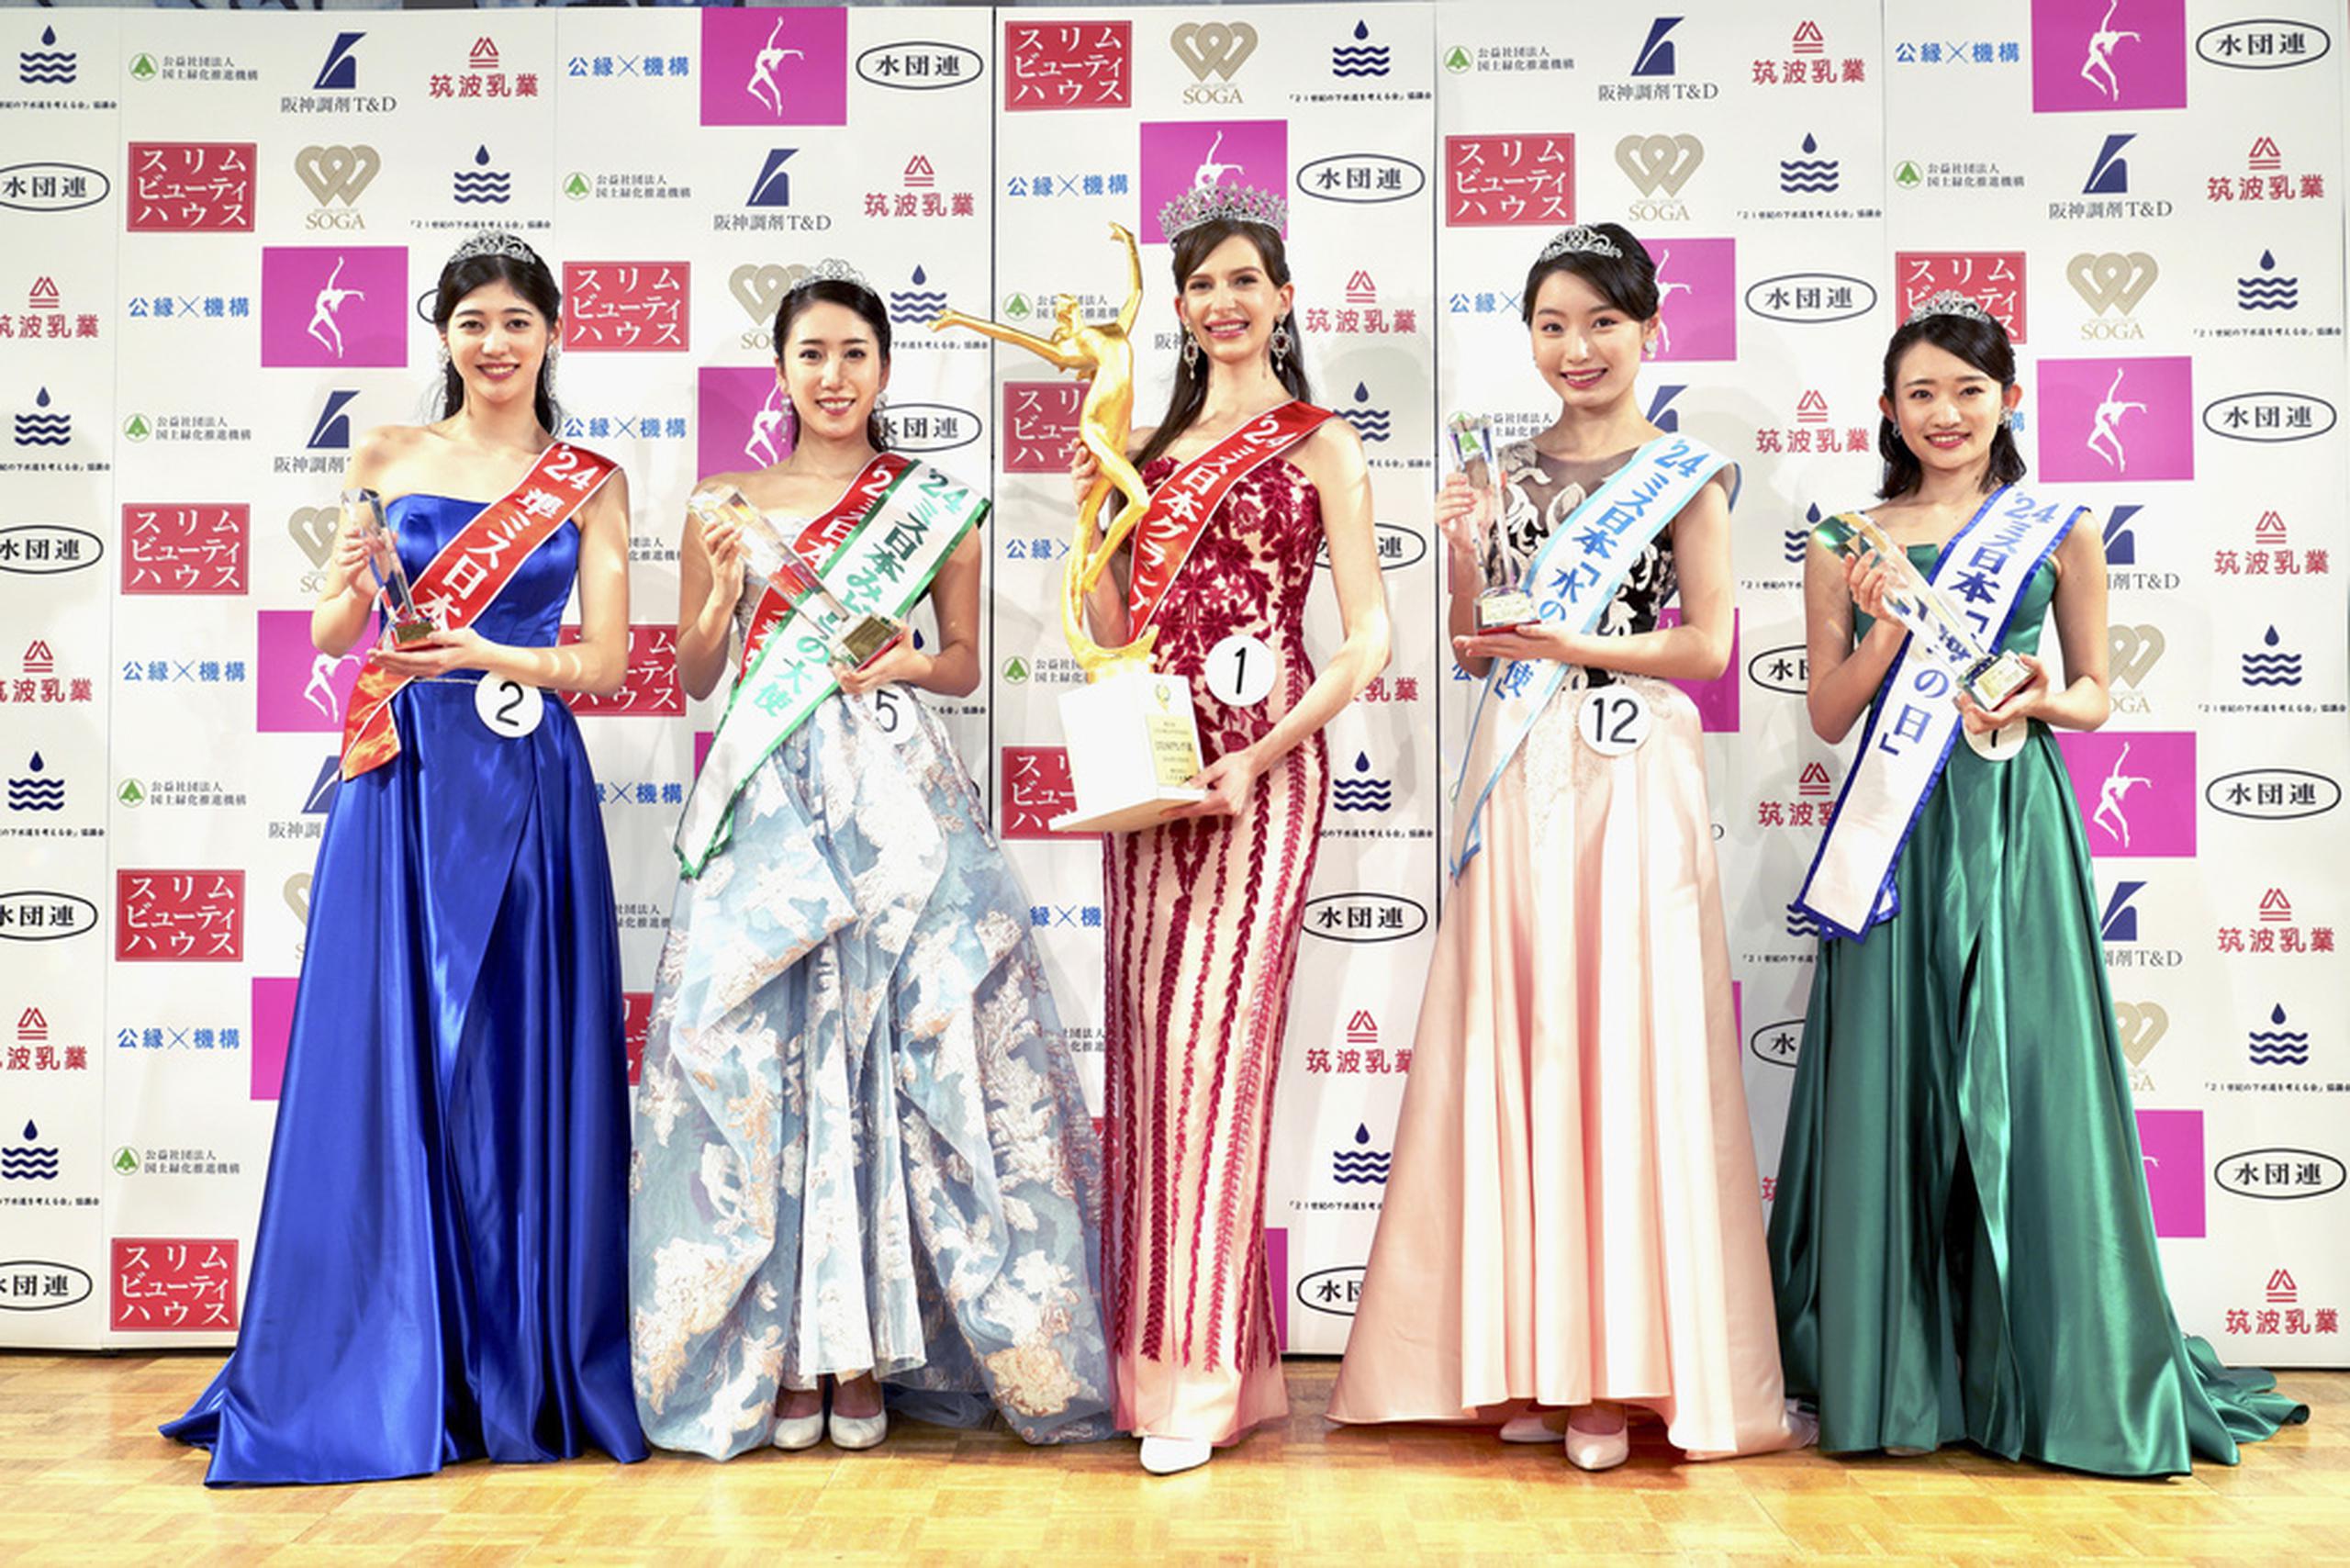 Carolina Shiino, en el centro, ganó el concurso Miss Nippon (Japón) Grand Prix, el pasado 22 de enero.